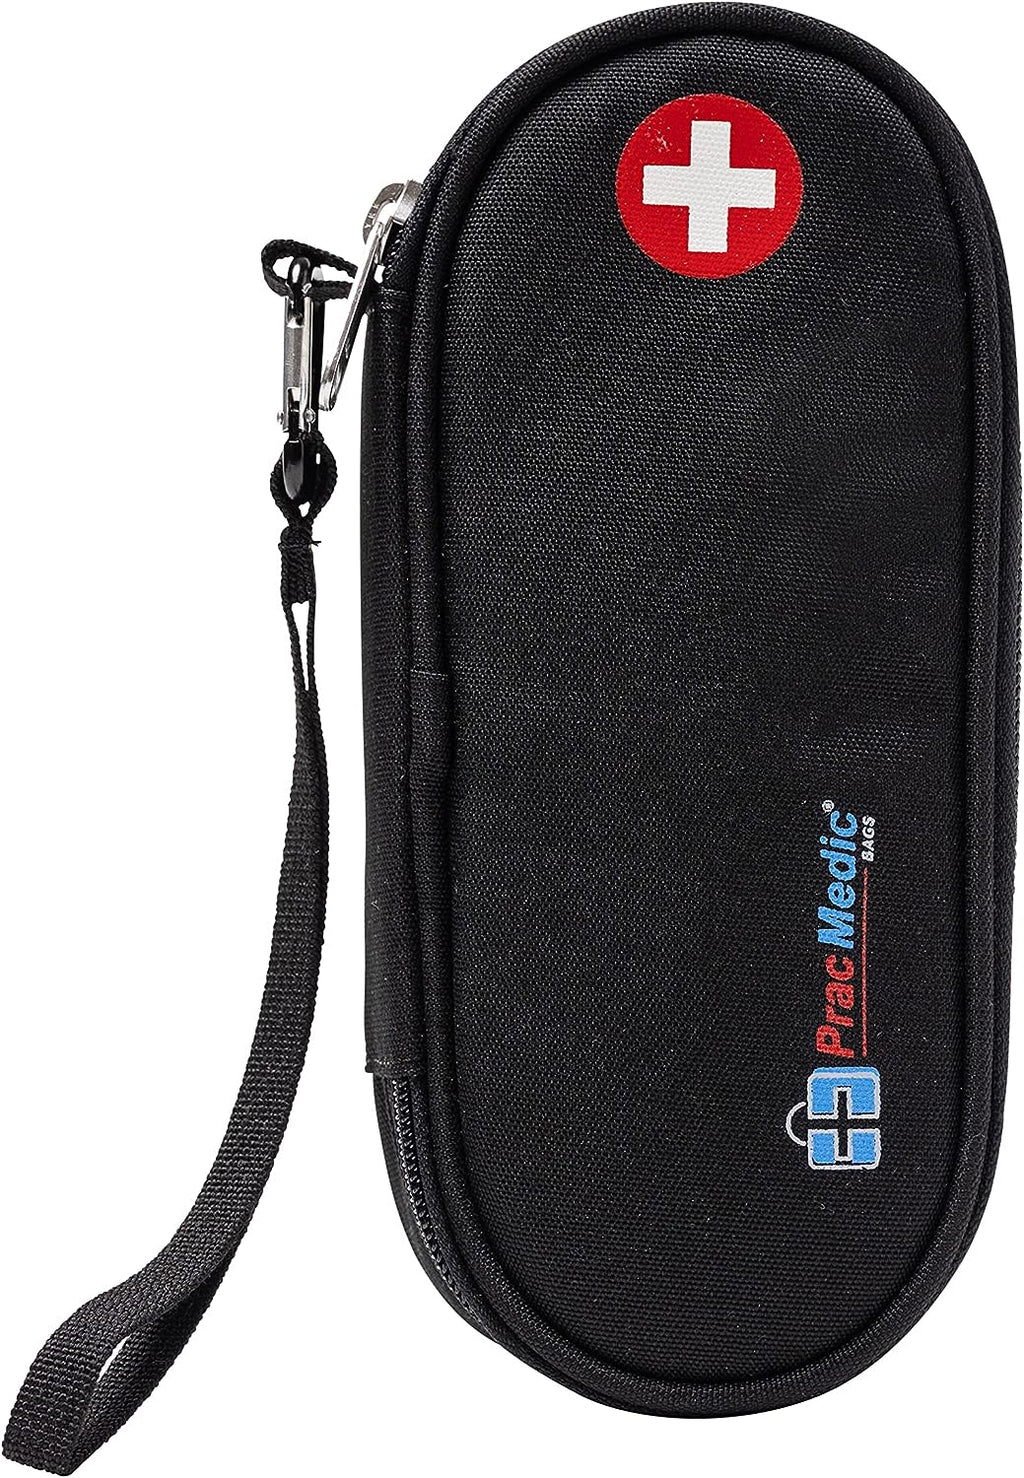  PracMedic Bags Epipen Case - Epi pens Carrying Case- Medical  Case for Kids - Insulated to Hold Inhaler, Epi Pen, Auvi Q, Epinephrine,  Allergies Medication - Medicine Bag for Traveling (Blue) 